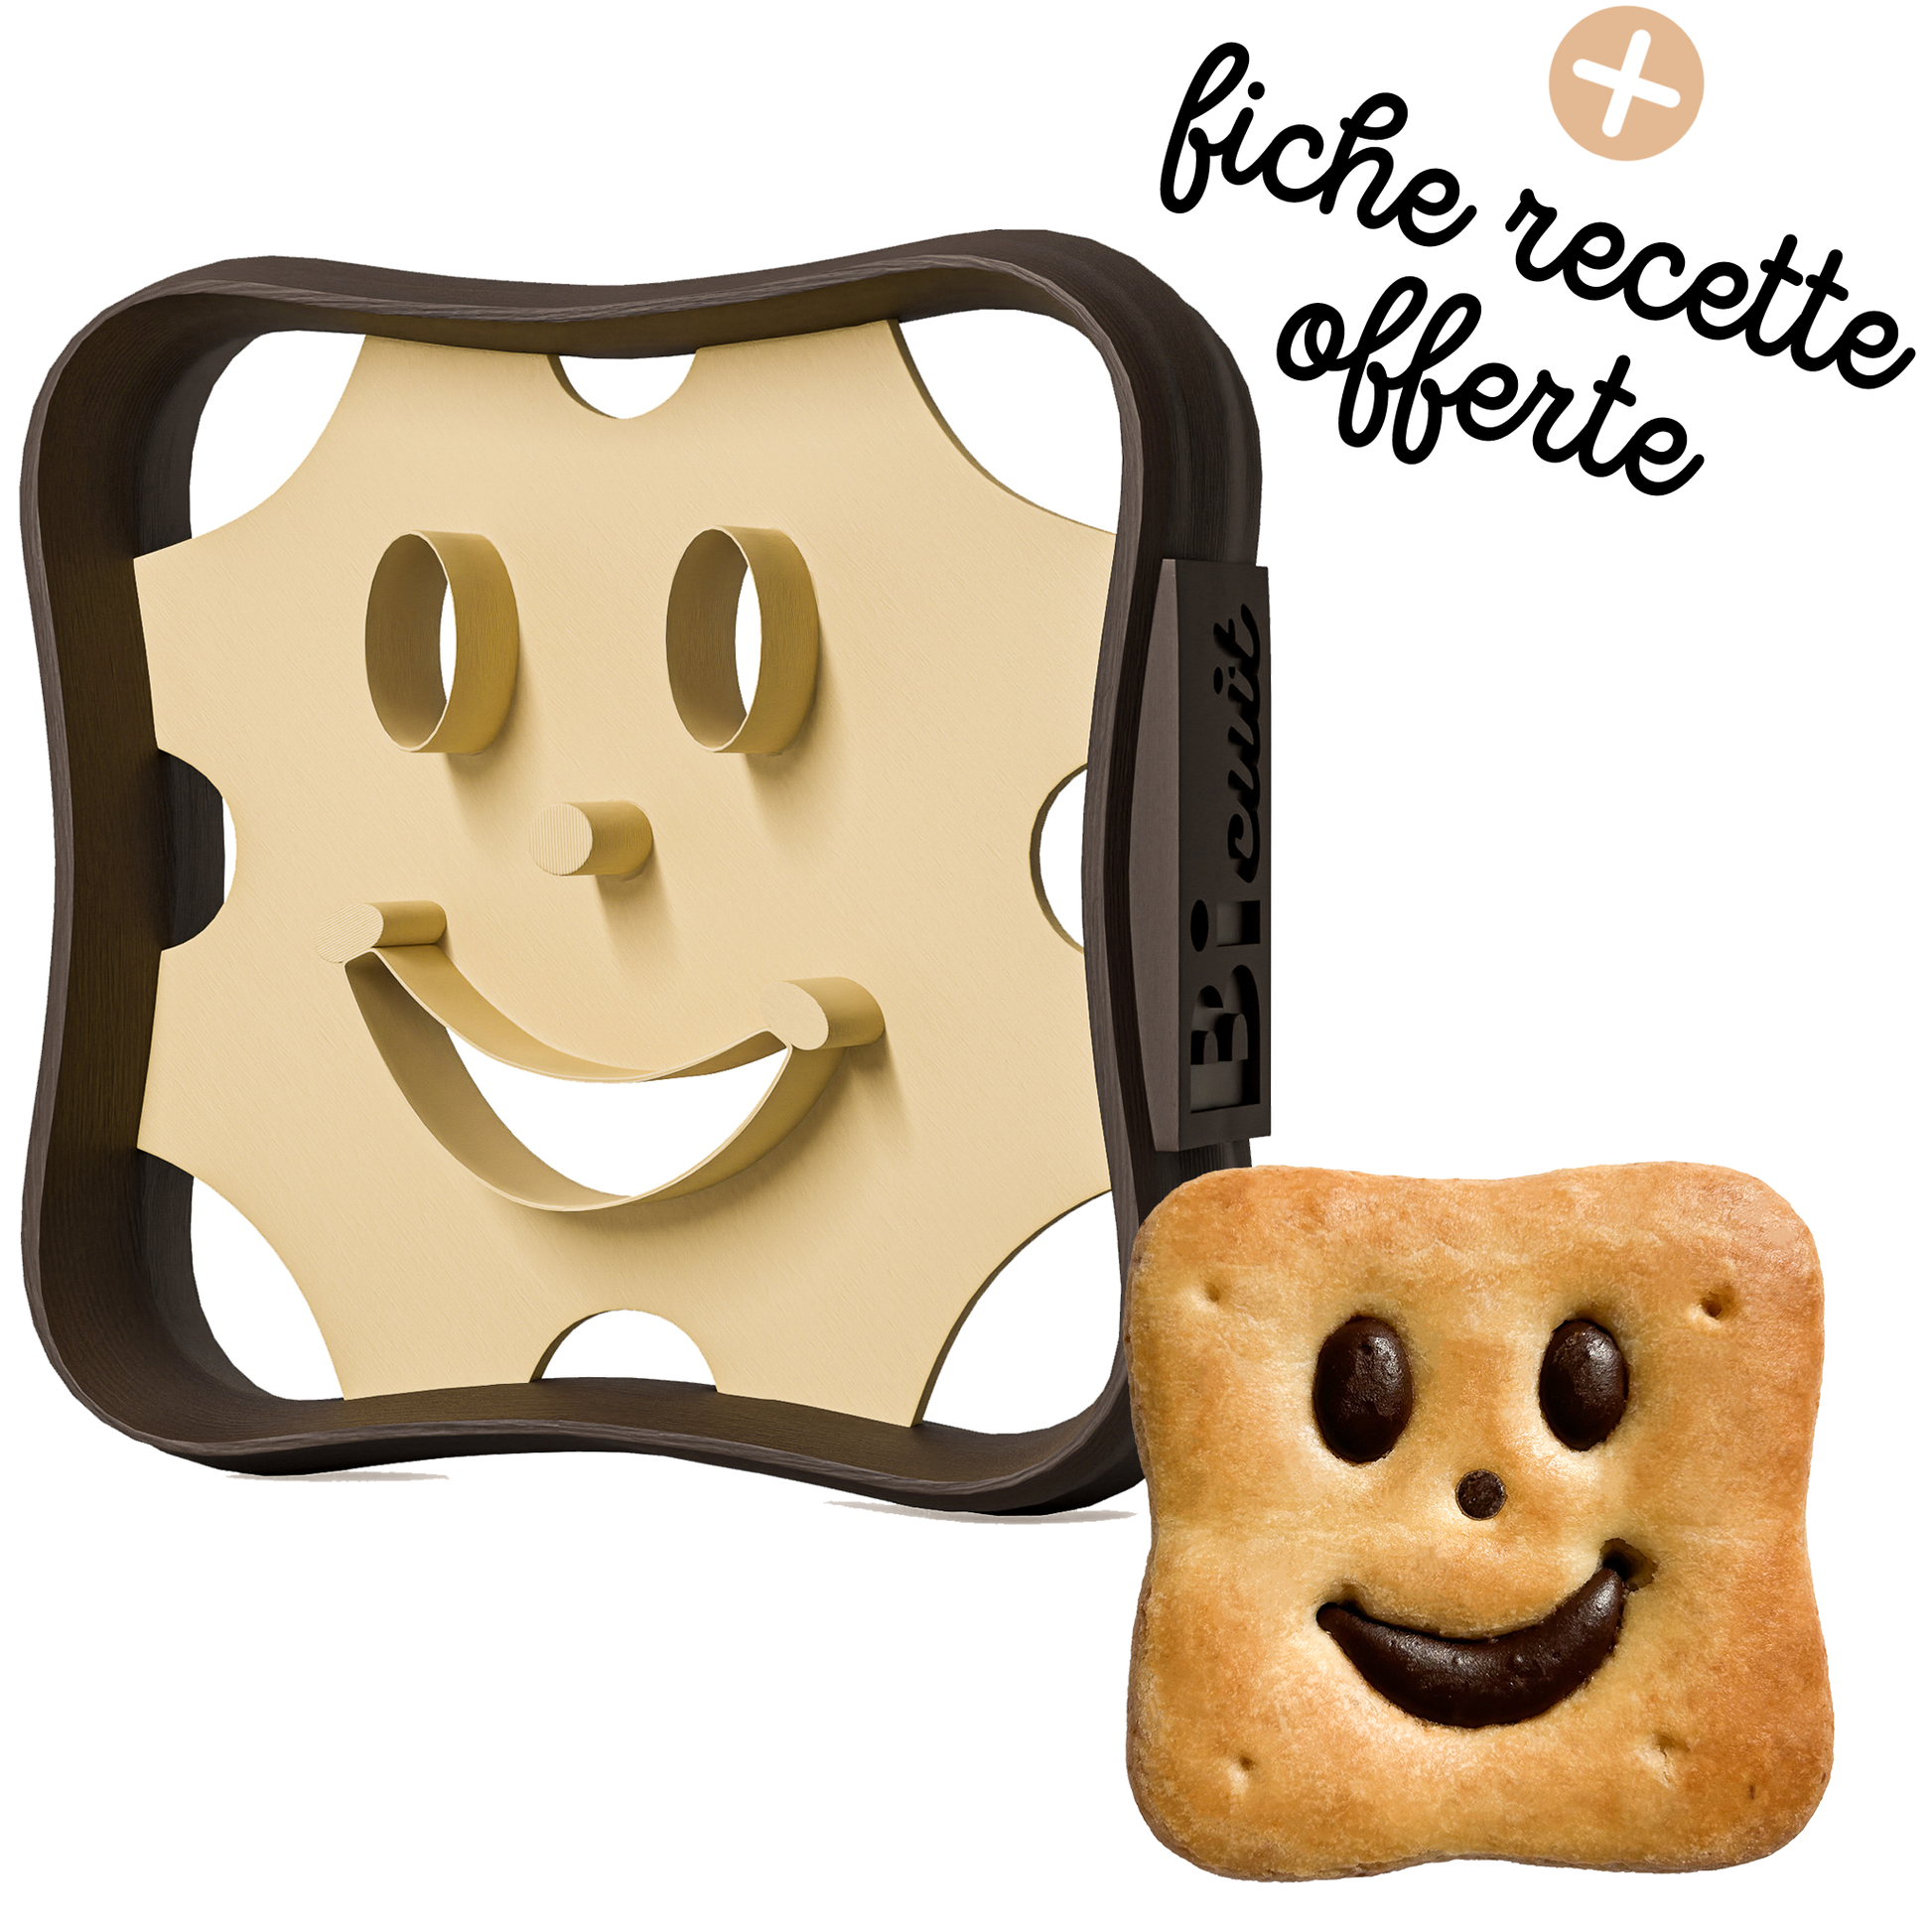 Emporte-pièces biscuits Goûter Enfant BN Carré | Lot de 4 | Recette Facile  Disponible | Conçus et fabriqués en France